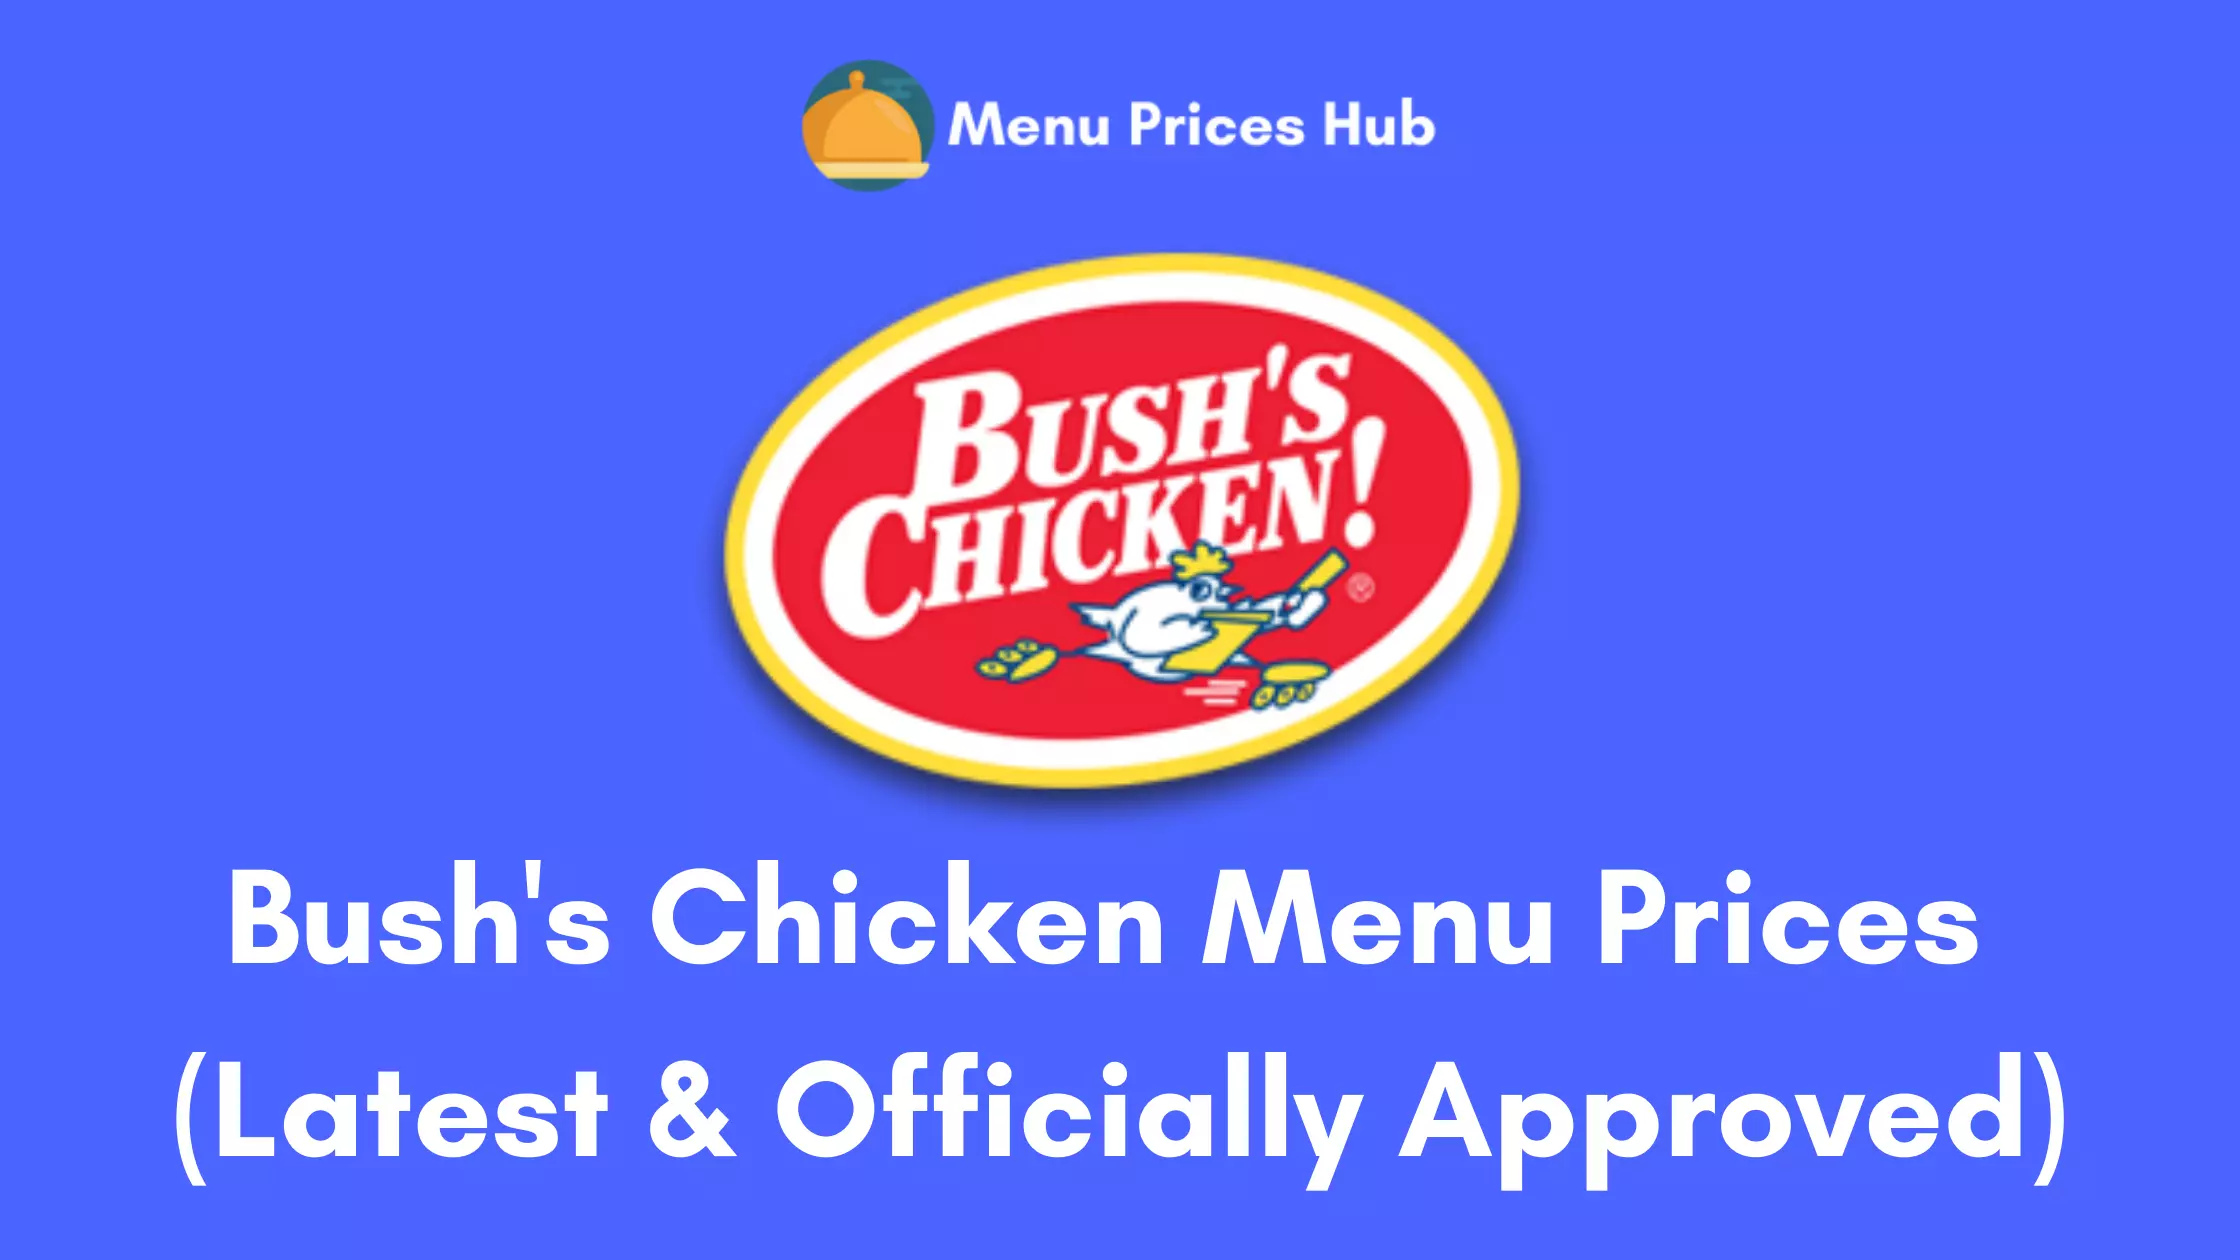 Bush's Chicken Menu Prices